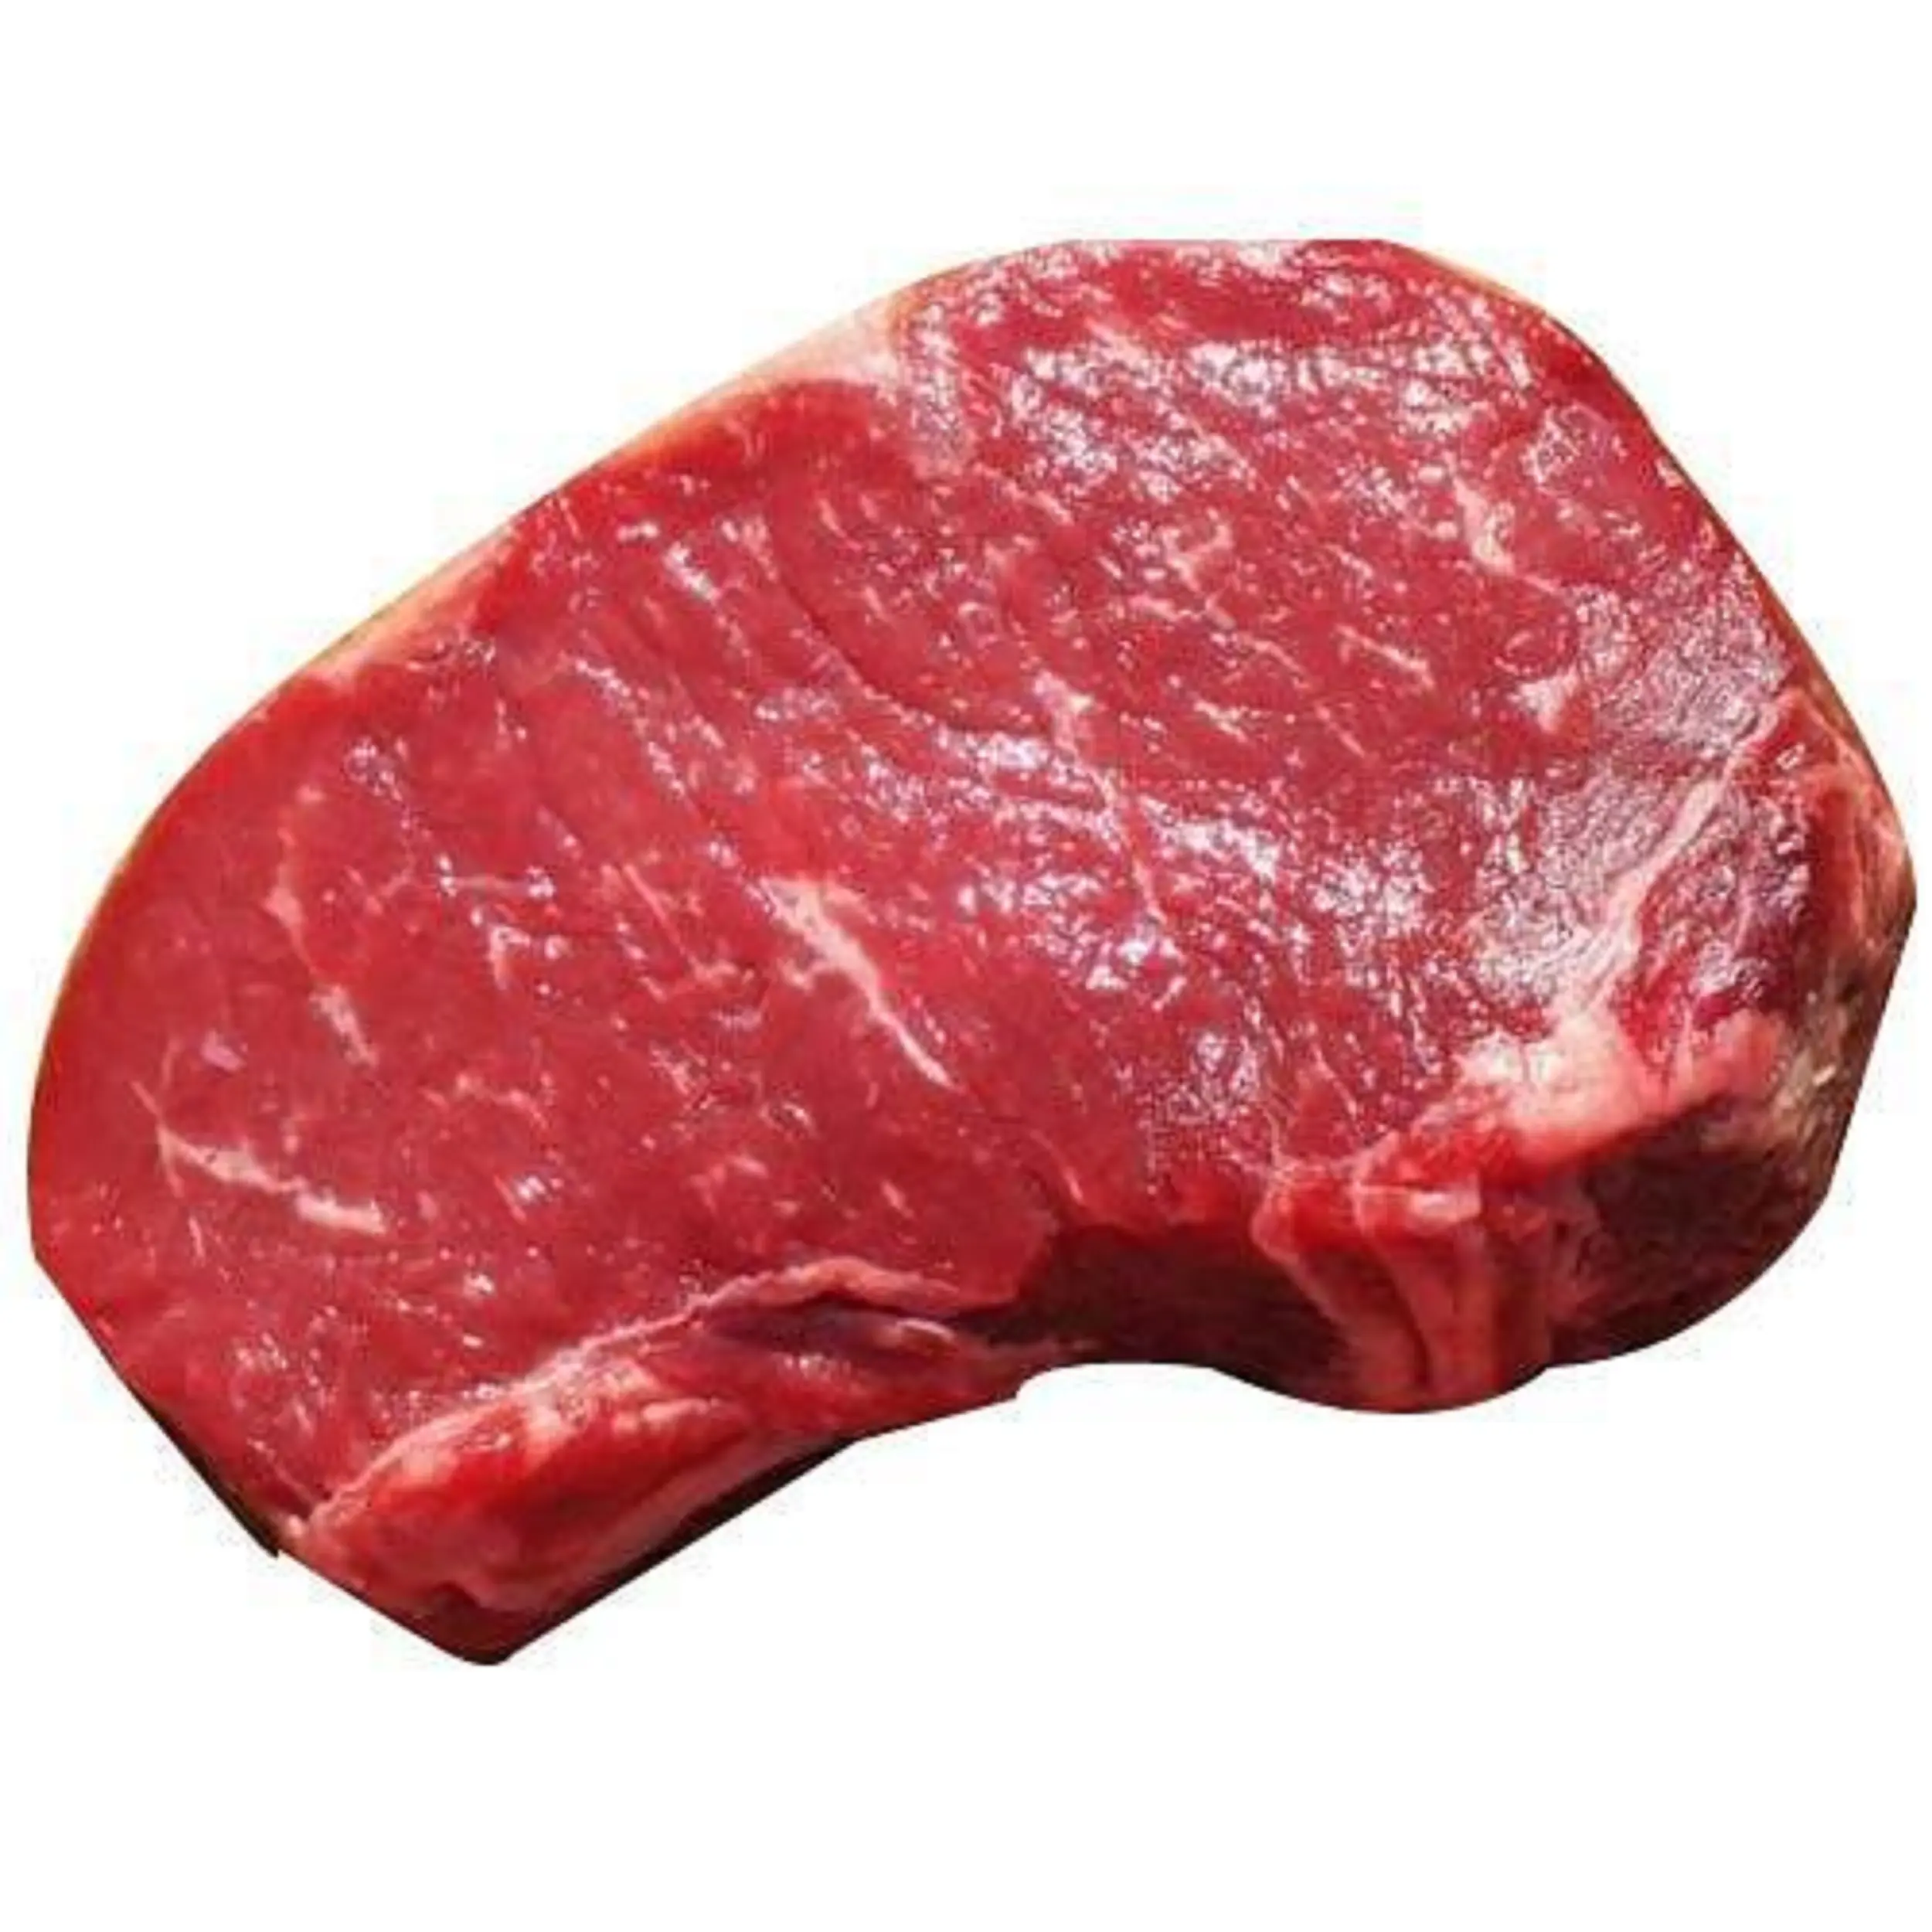 Halal Grade Buffalo Beef Frisches gefrorenes Büffel fleisch zum günstigen Preis